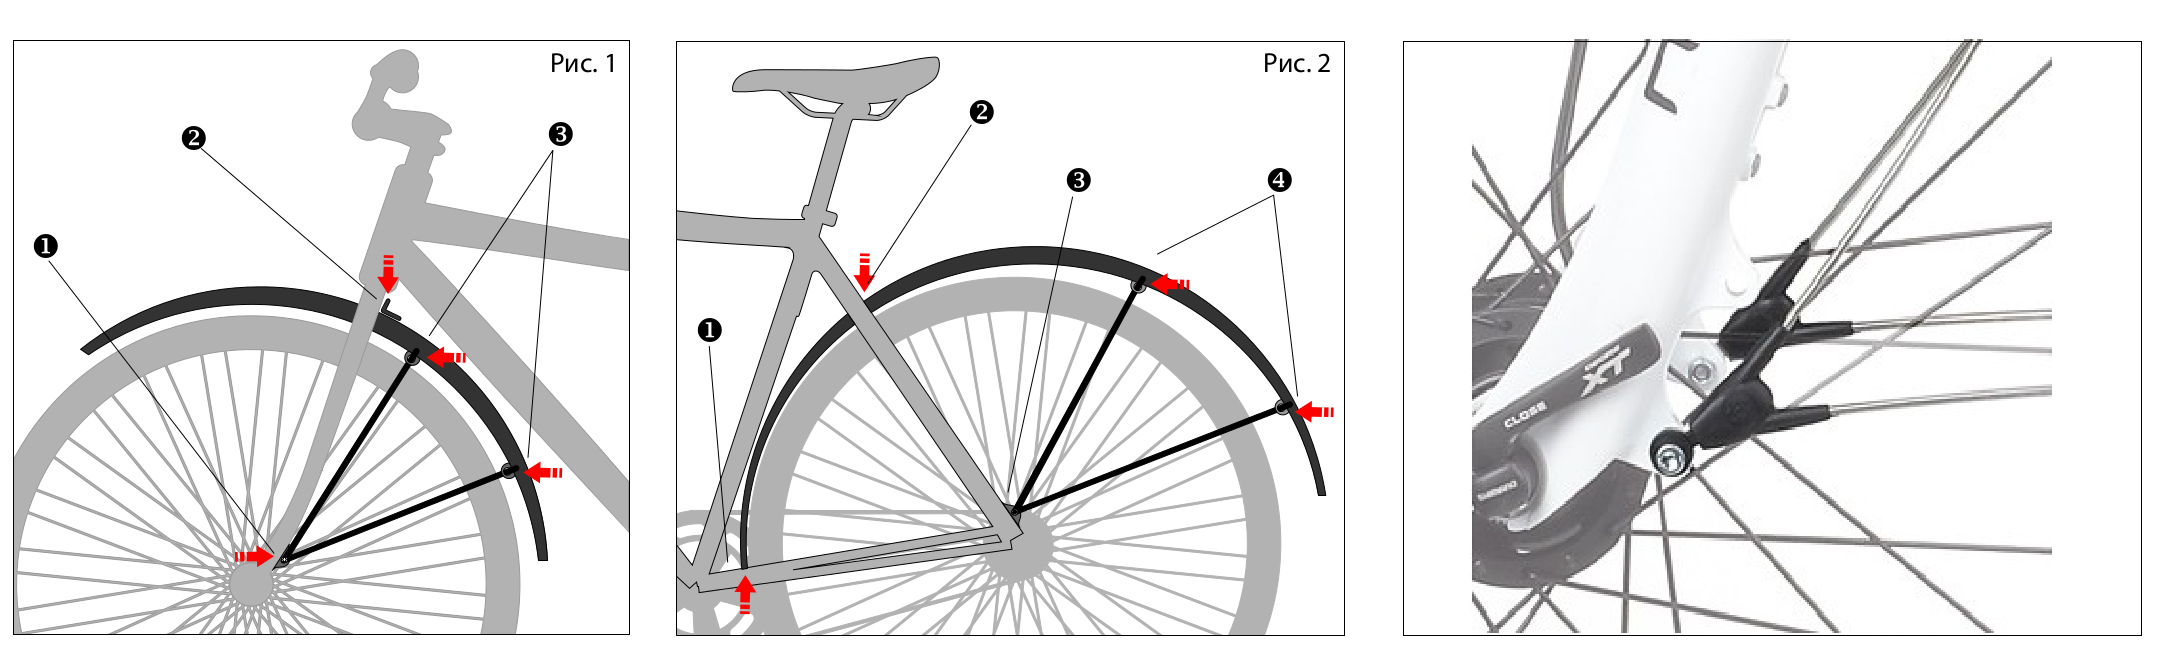 Как установить крылья на велосипед своими руками, инструкция